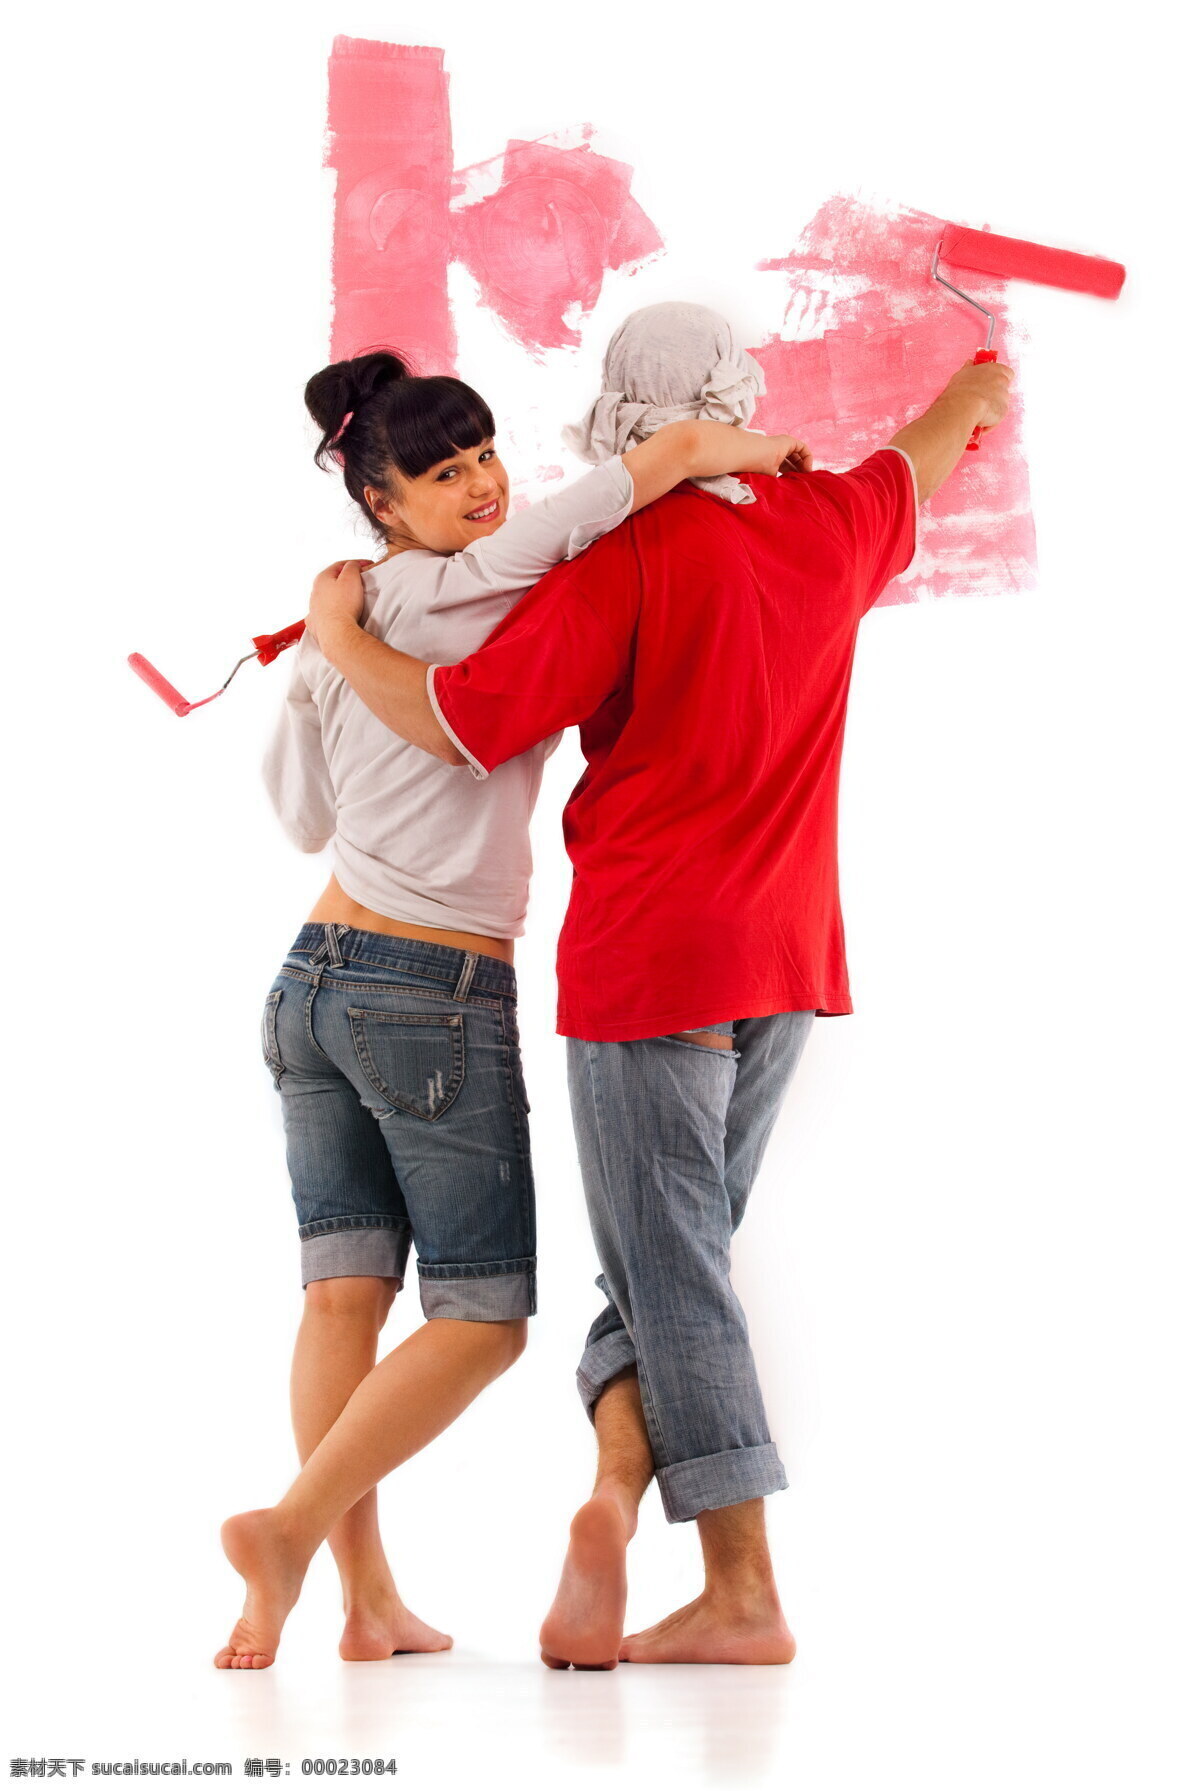 刷 出 红色 墙 夫妻 刷子 滚筒刷 墙面 油漆 装修 粉刷 新家 夫妇 男人女人 情侣图片 人物图片